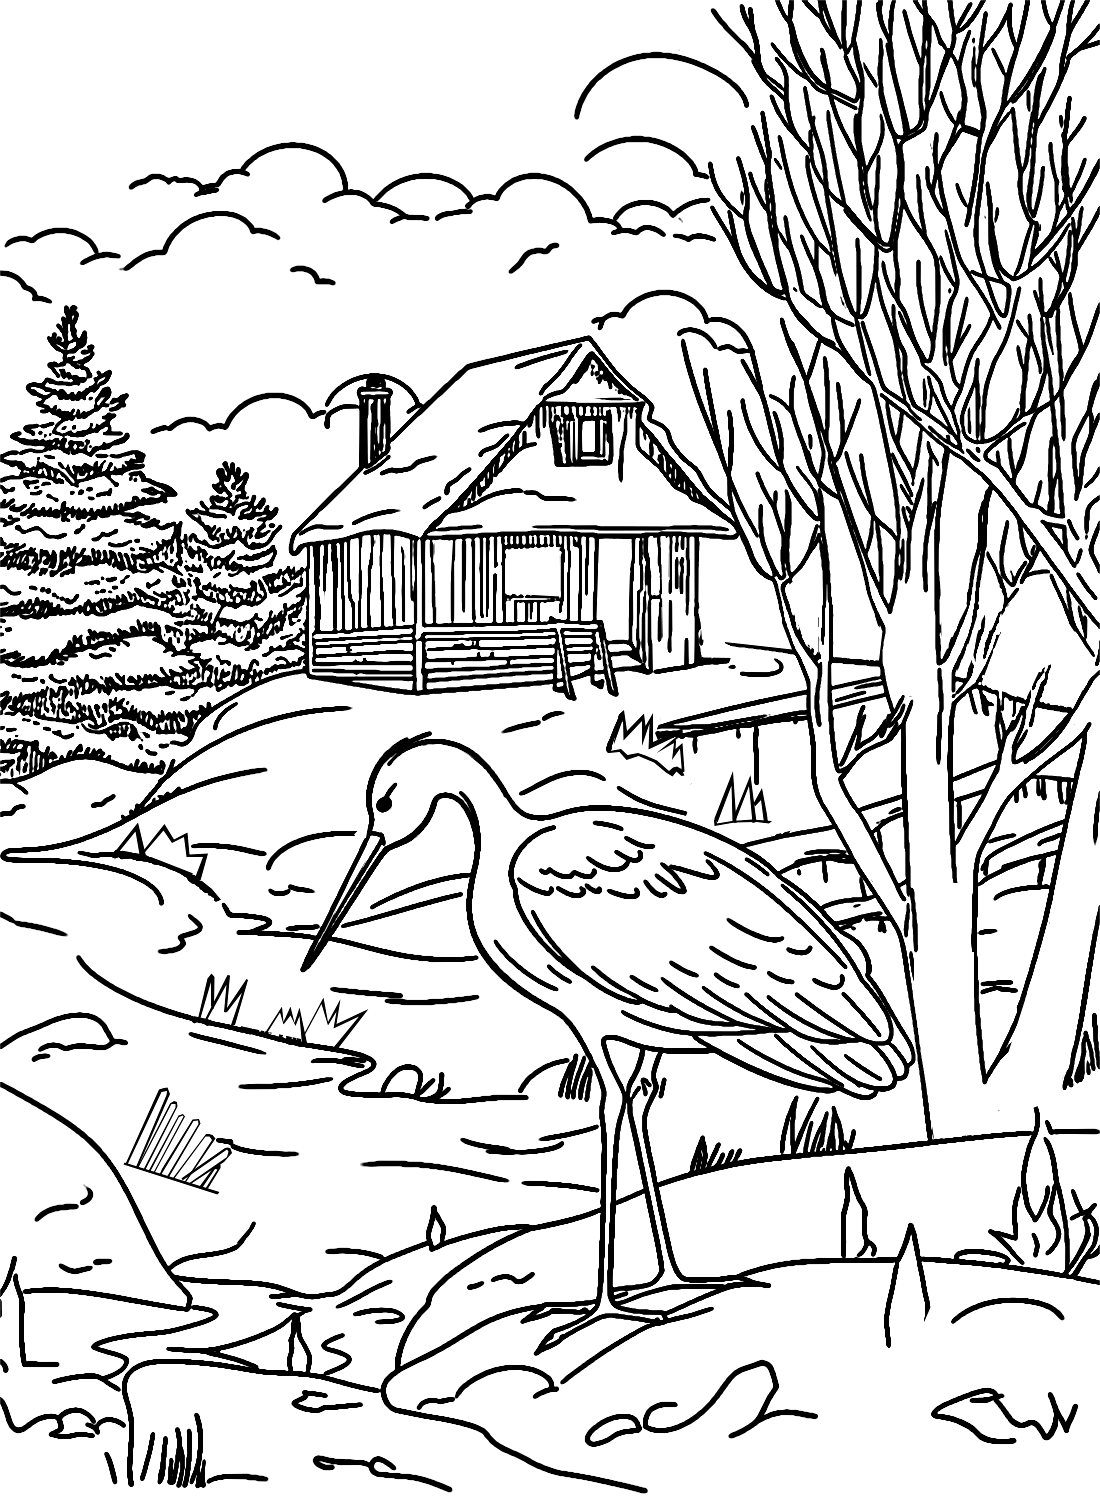 Cigogne dans une scène d'hiver de Stork